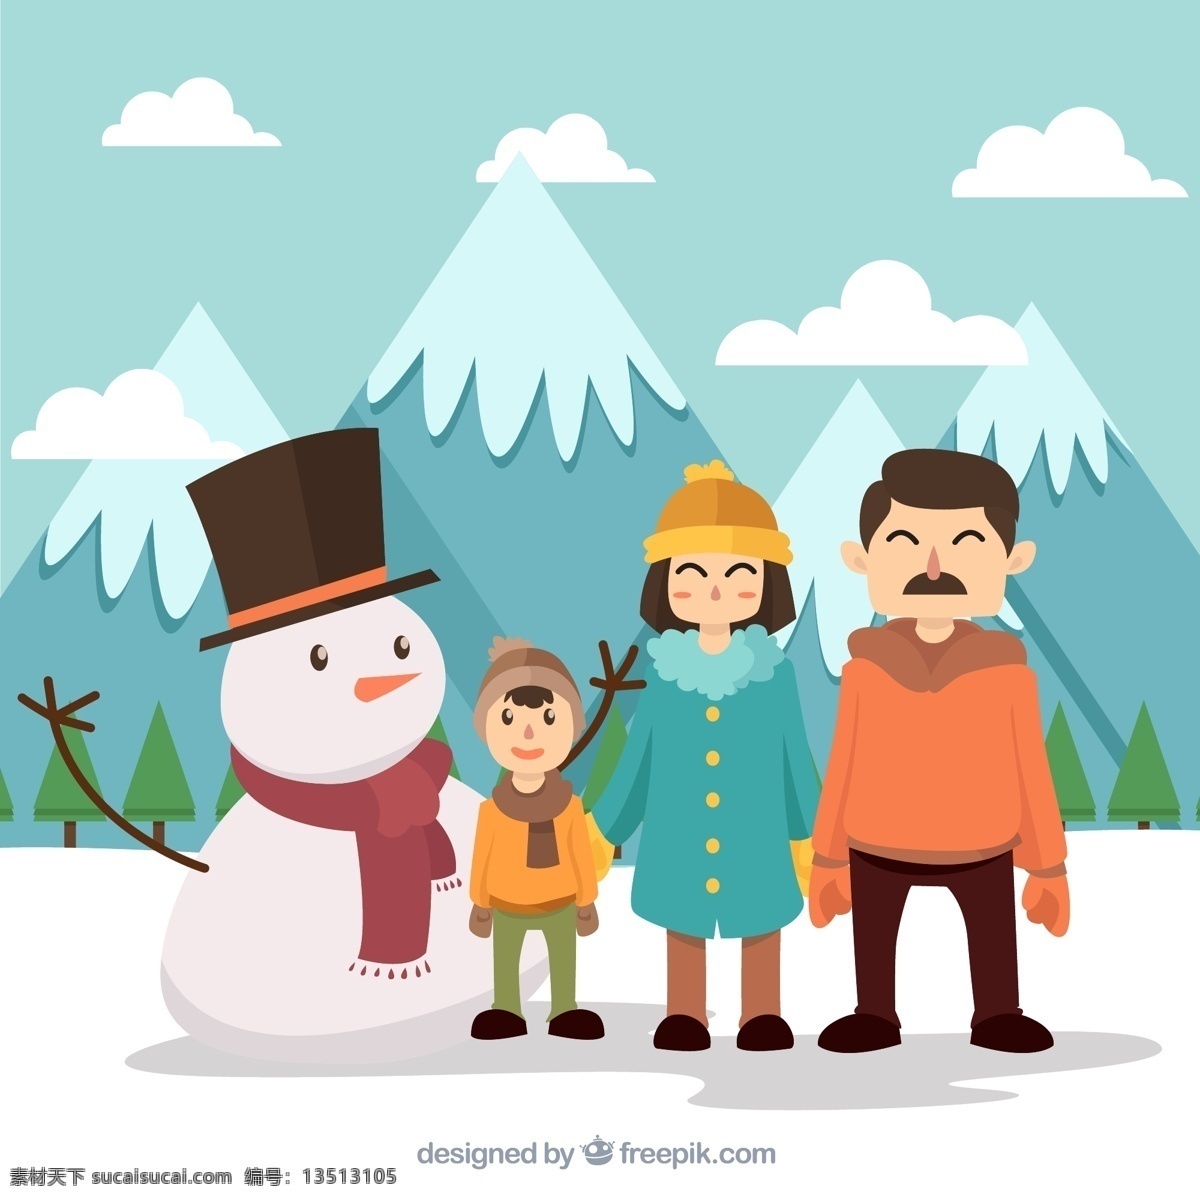 雪地 上 一家 三口 雪人 雪山 云朵 男孩 男子 女子 儿子 爸爸 妈妈 树木 郊外 冬季 三口之家 家 动漫动画 风景漫画